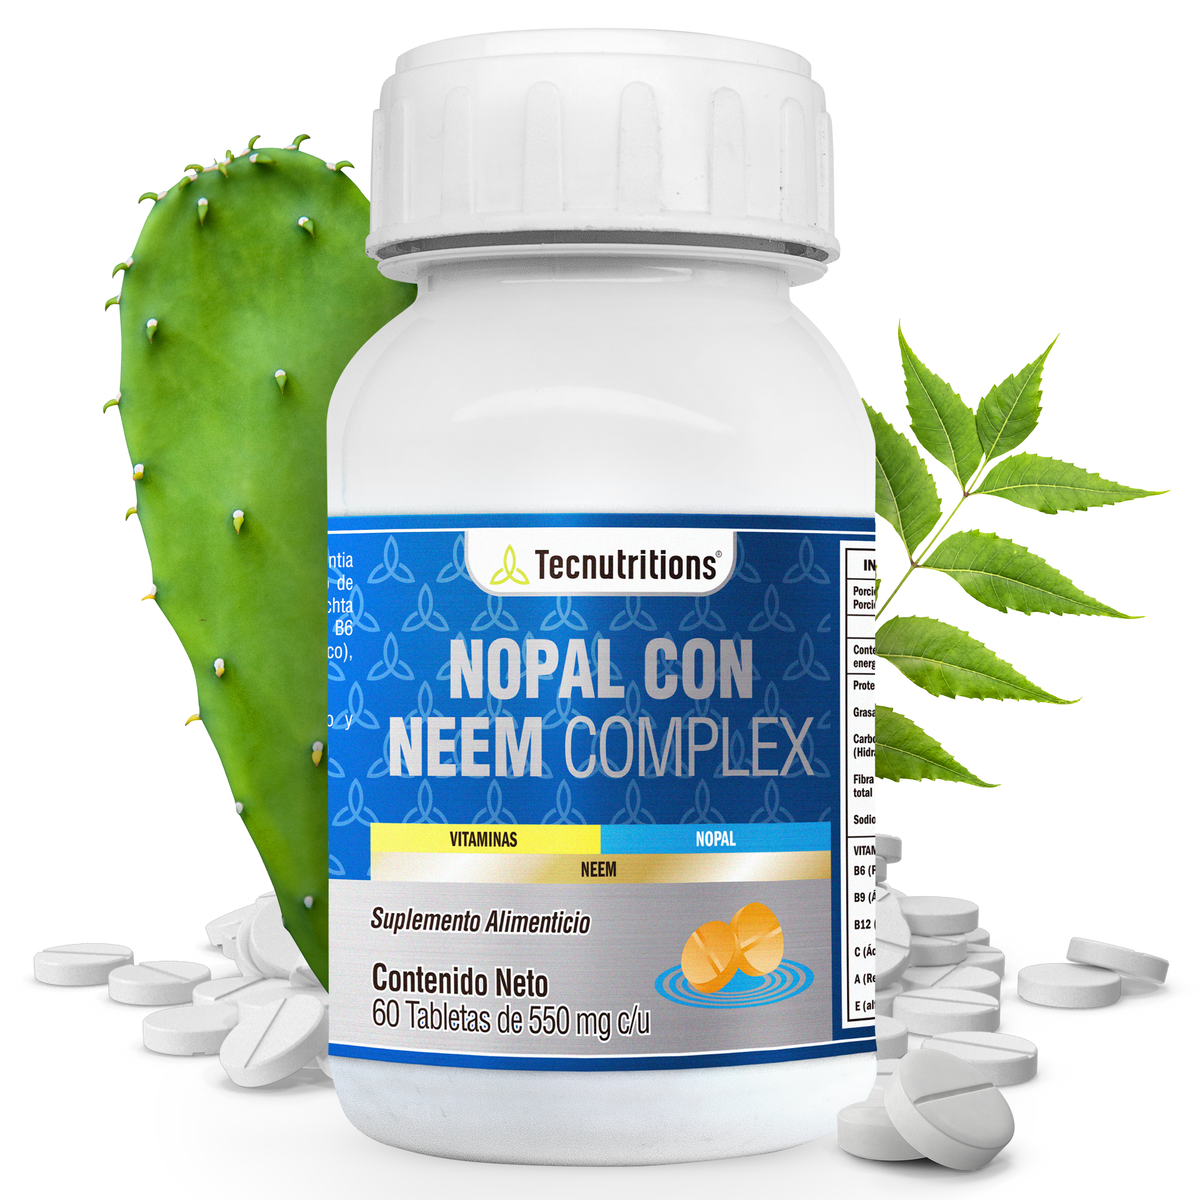 Suplemento alimenticio Nopal con Neem Complex, 60 tabs, con nopal, extracto de neem, vitamina c